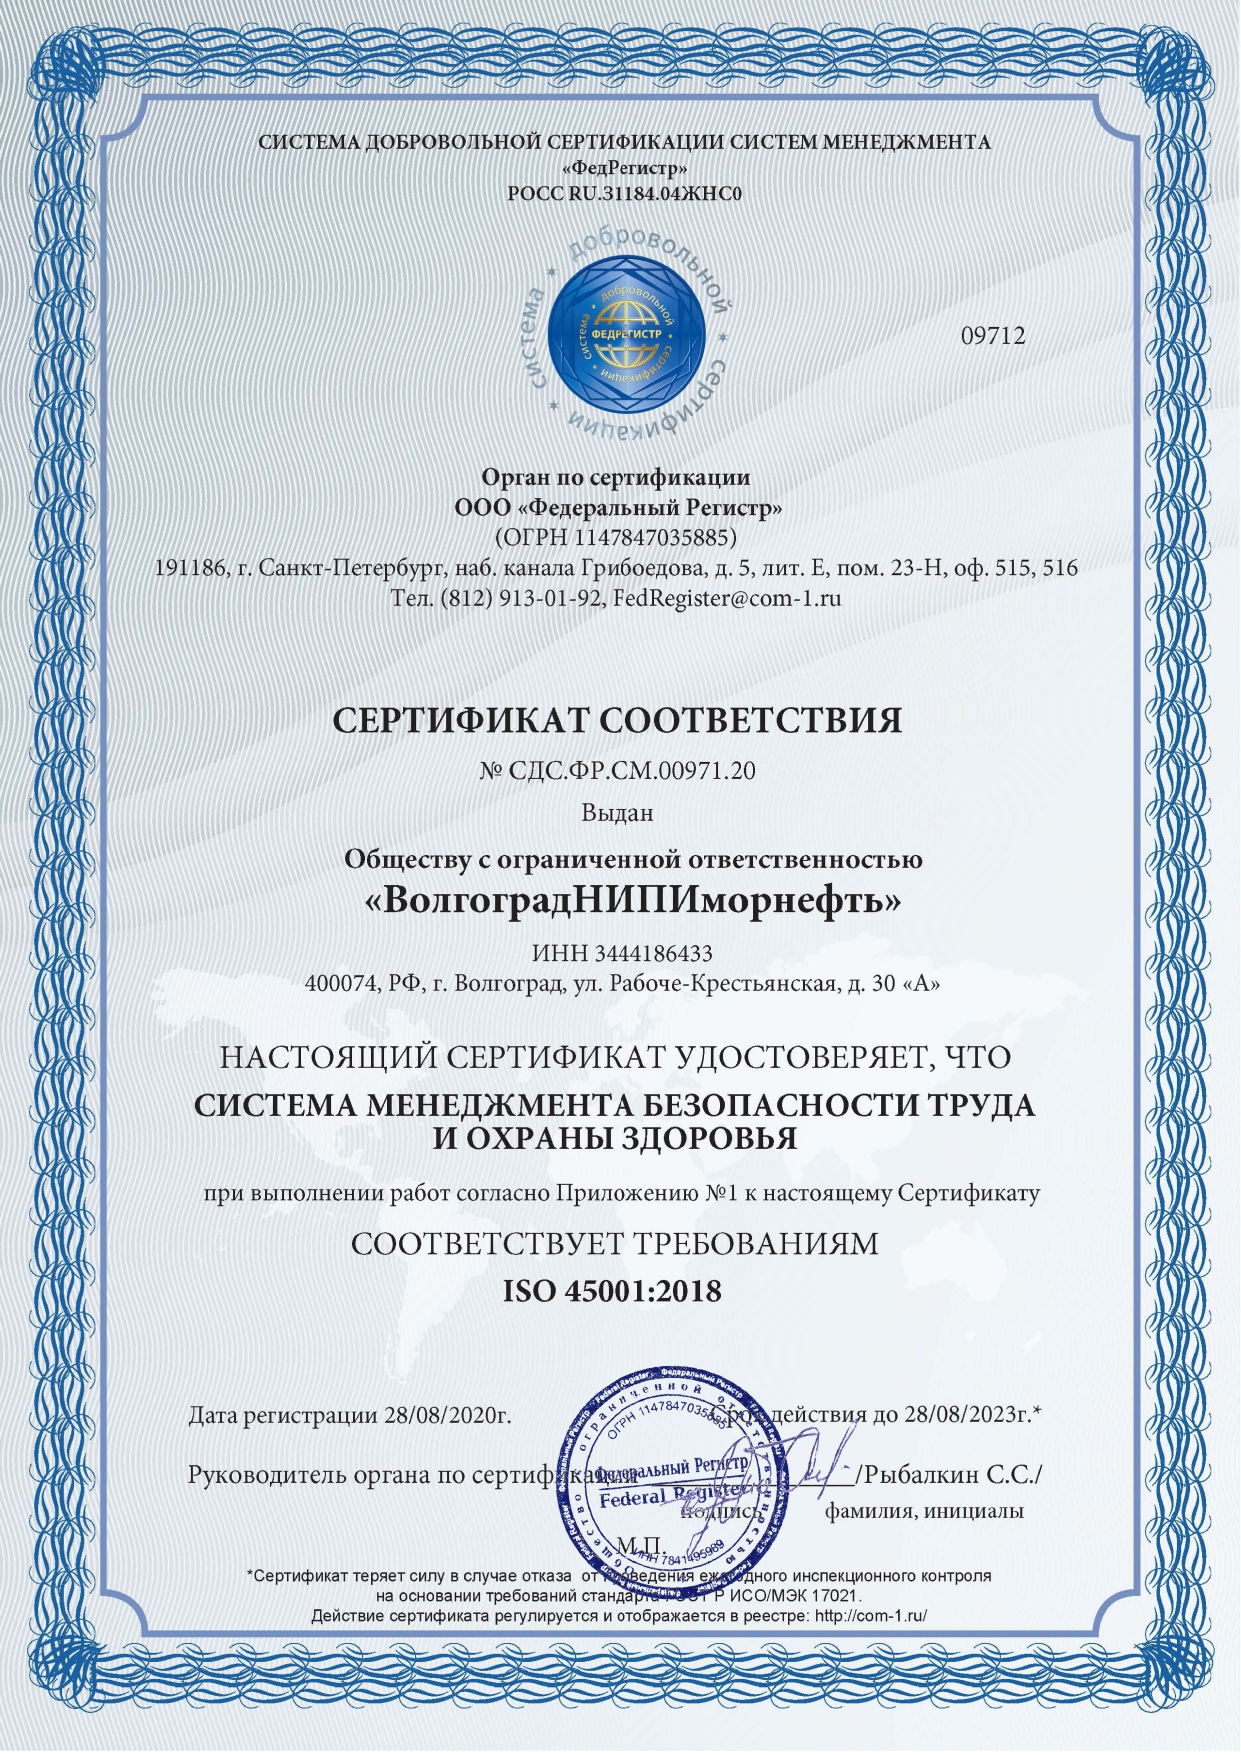 Сертификат соответствия системы менеджмента безопасности труда и охраны здоровья требованиям